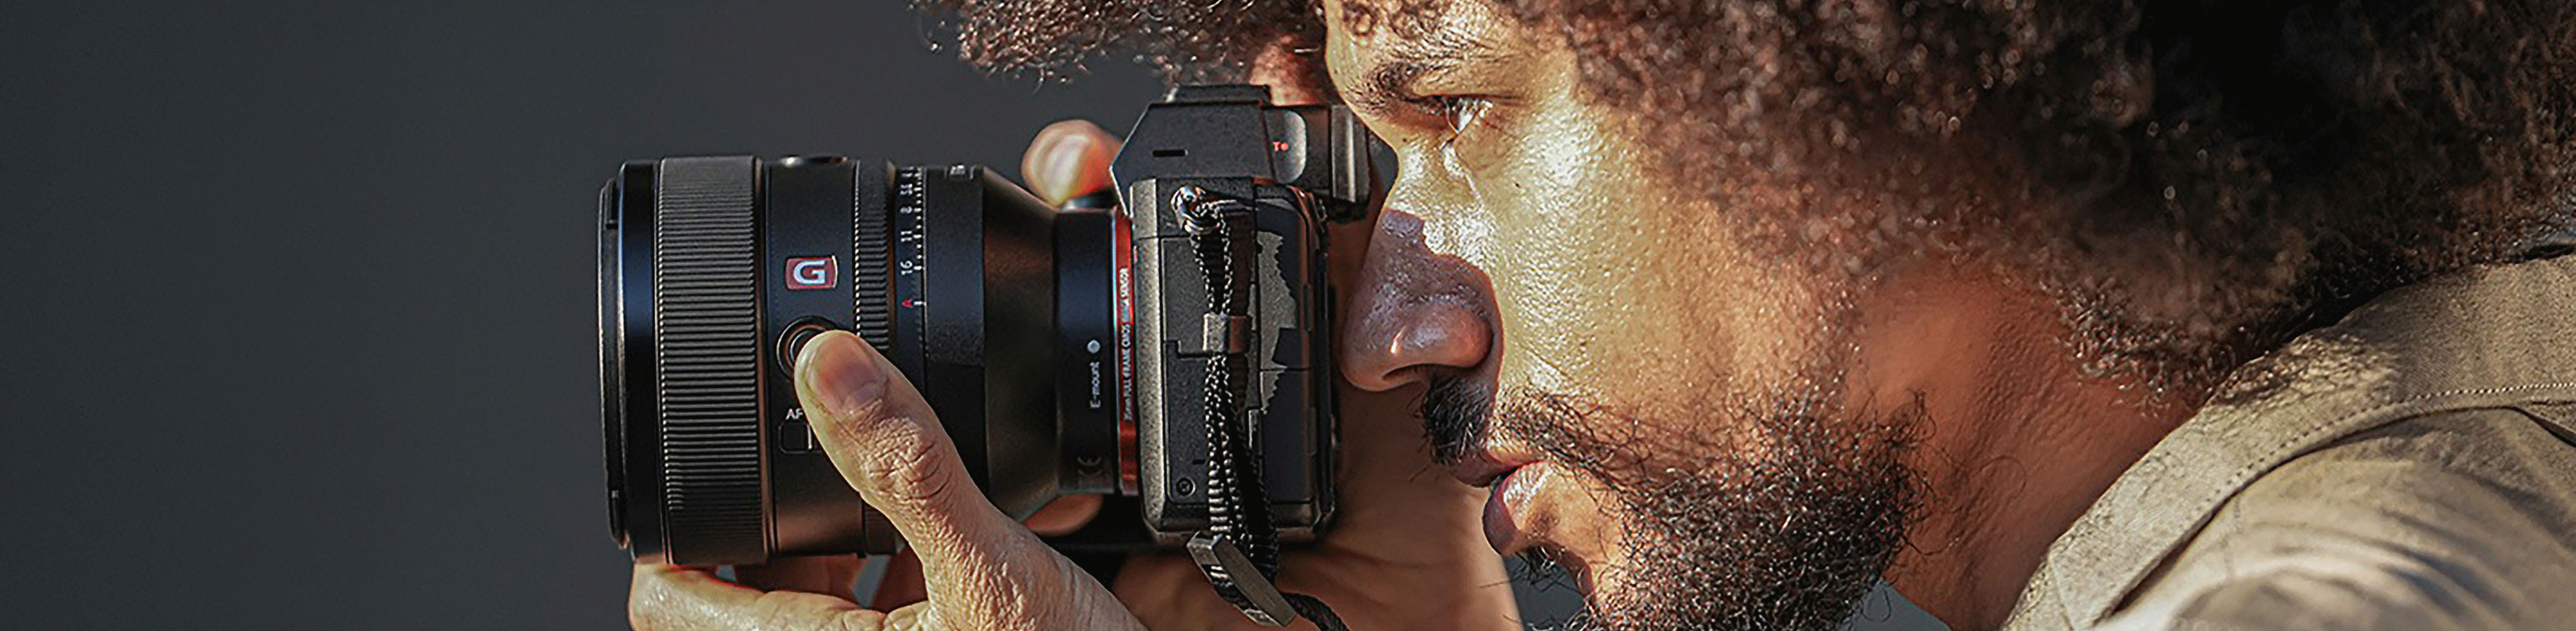 Imagen de una persona sujetando una cámara con el lente FE de 50 mm F1.2 GM acoplada